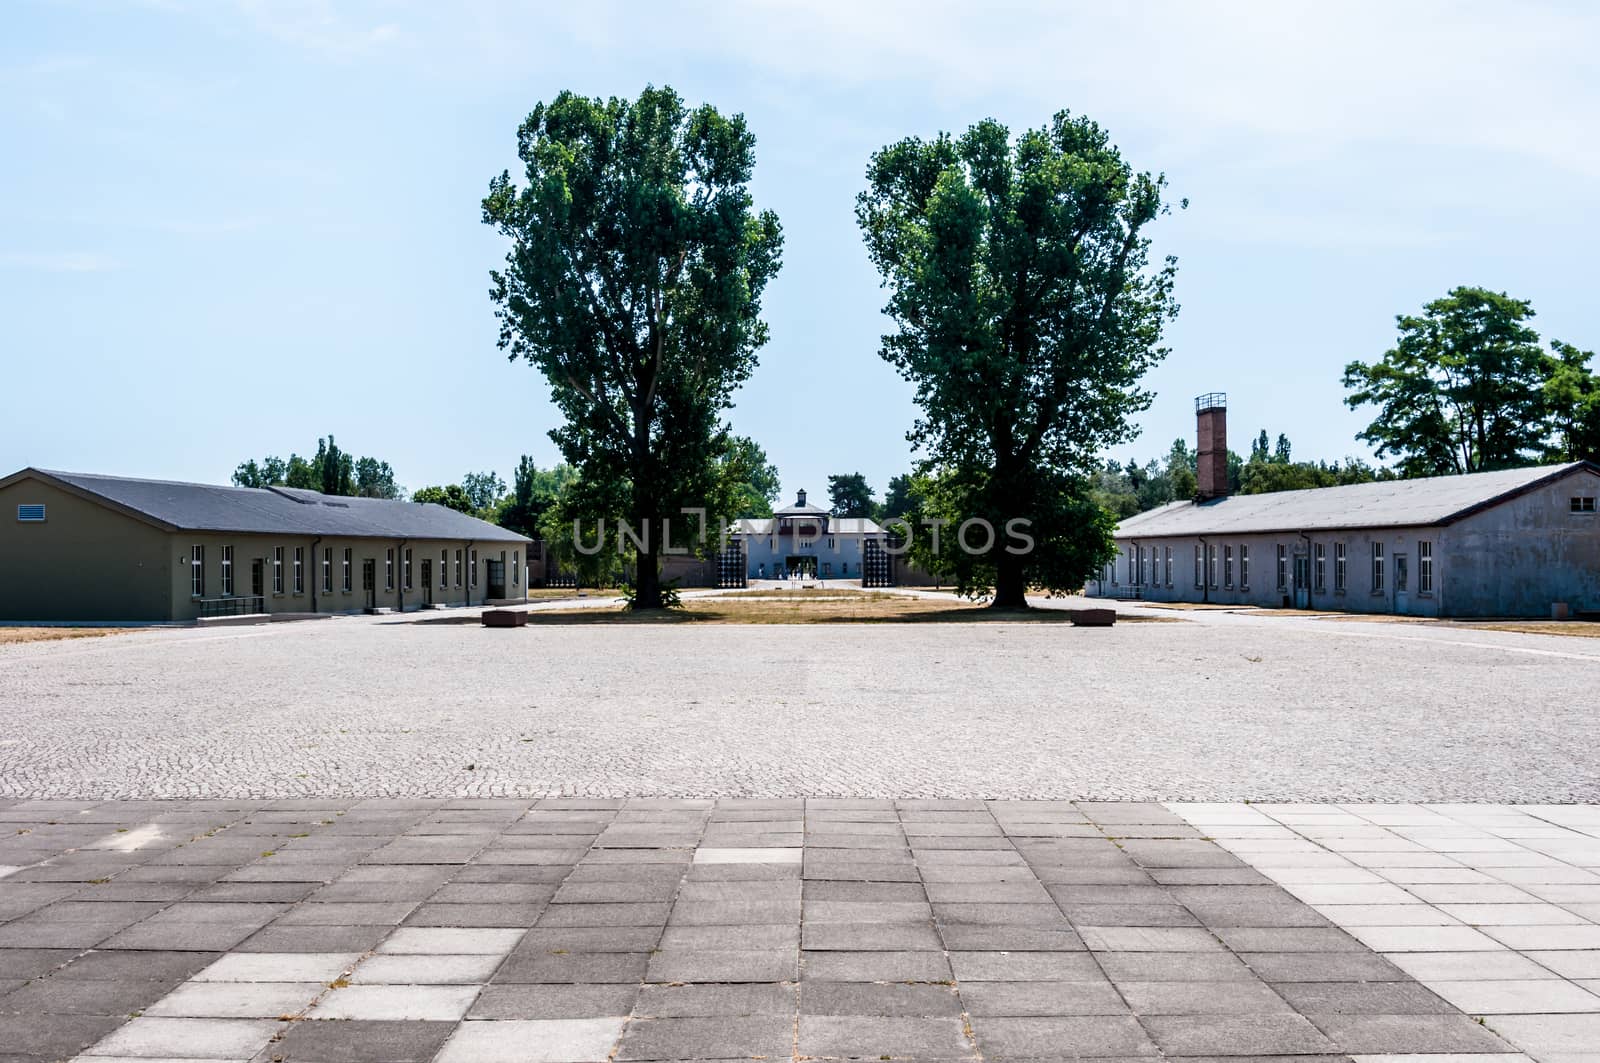 Sachsenhausen by Jule_Berlin